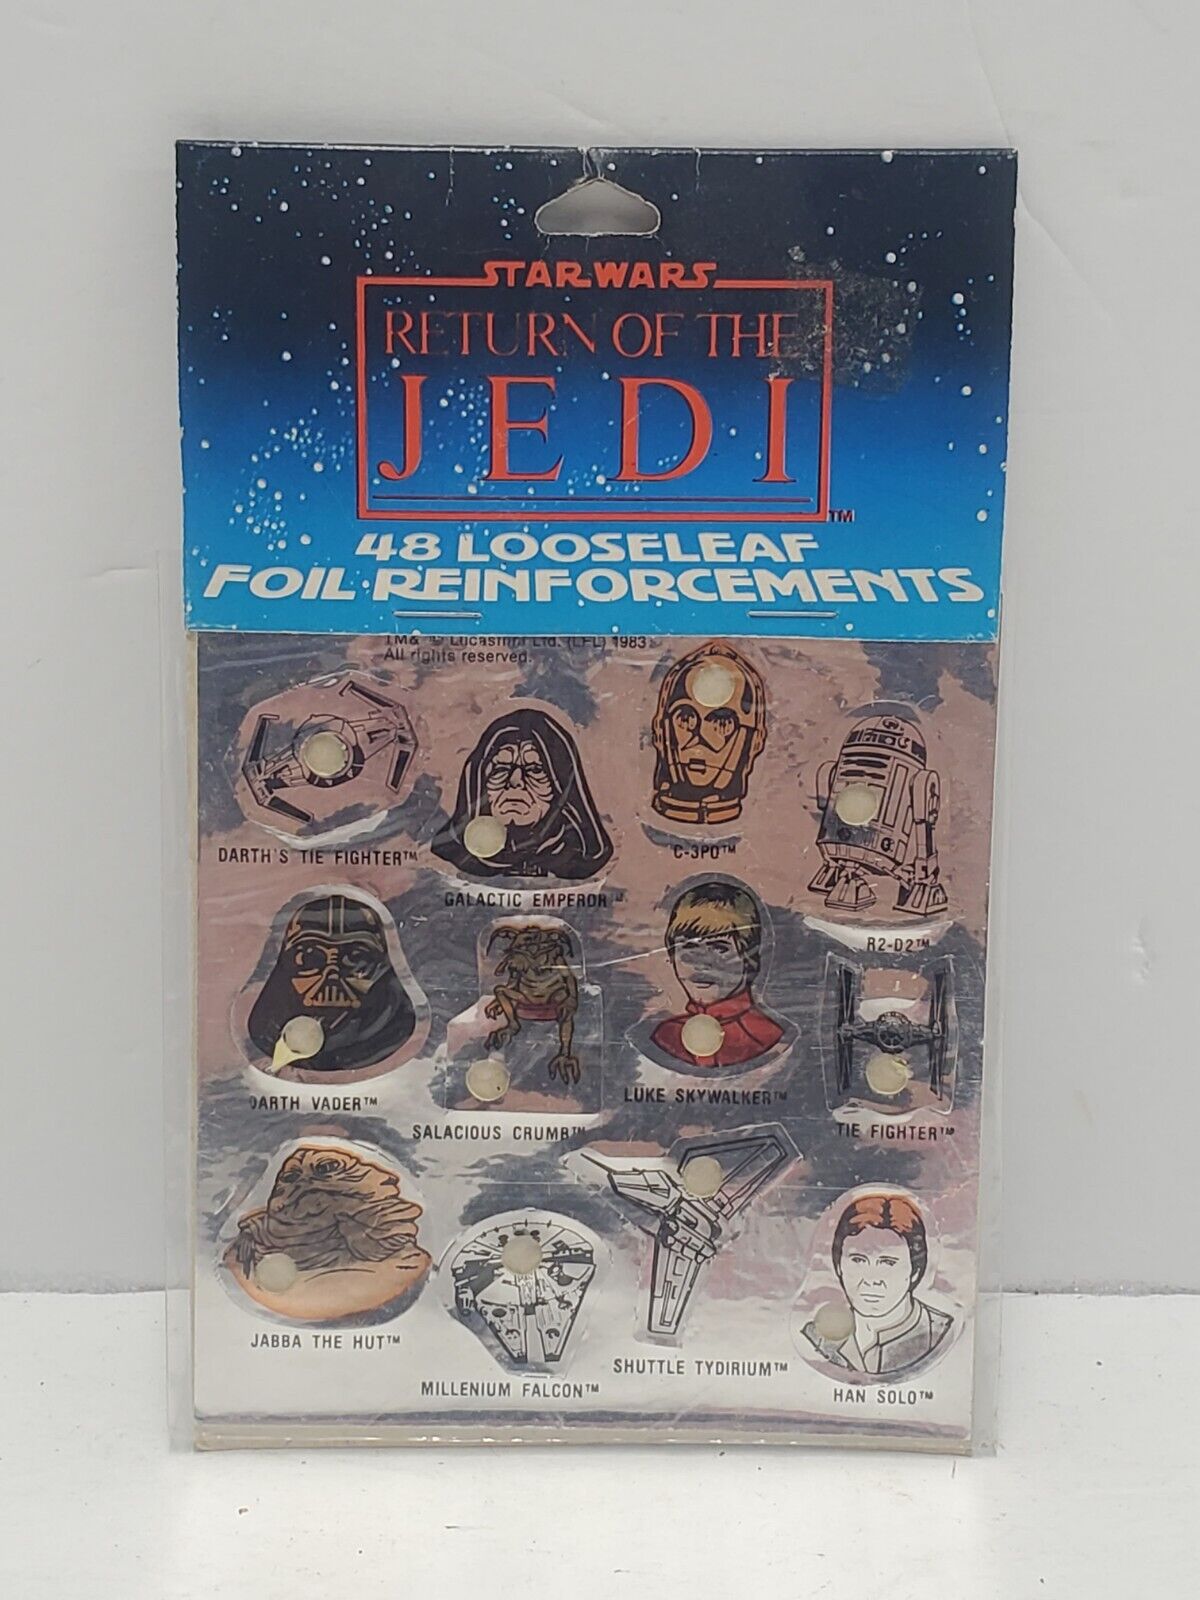 1 Pack Vintage Star Wars ROTJ Sticker 48 Looseleaf Foil Reinforcments 1983 New